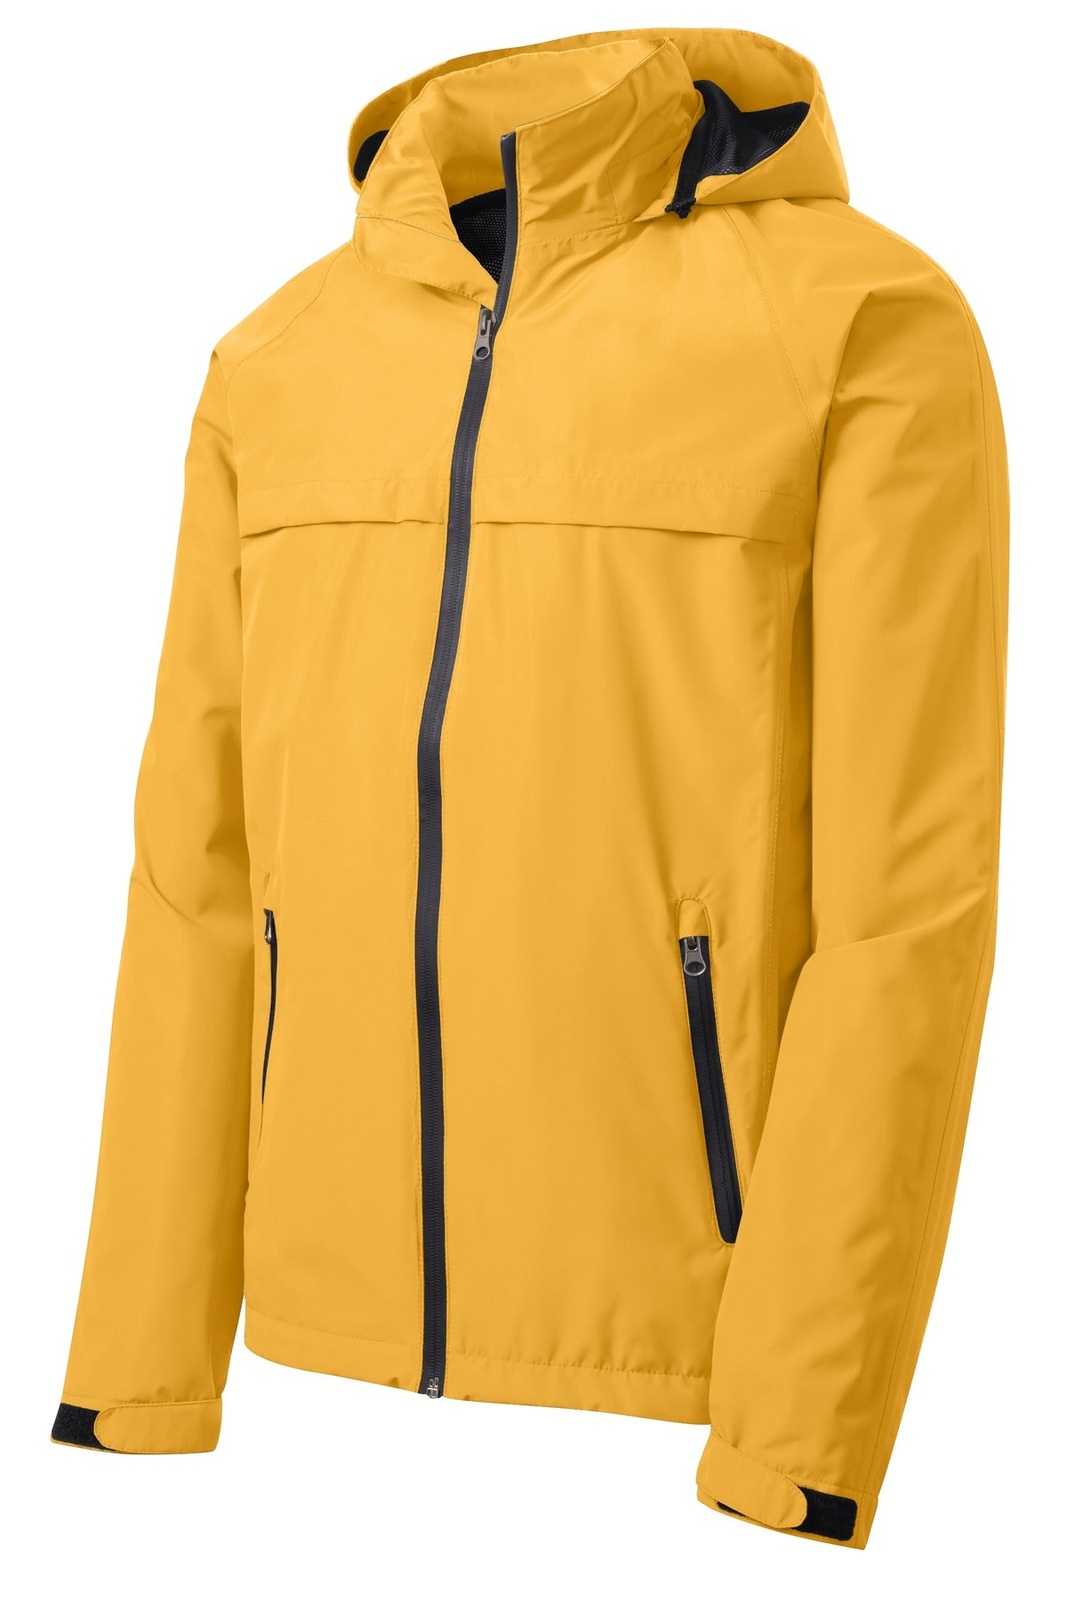 Port Authority J333 Torrent Waterproof Jacket - Slicker Yellow